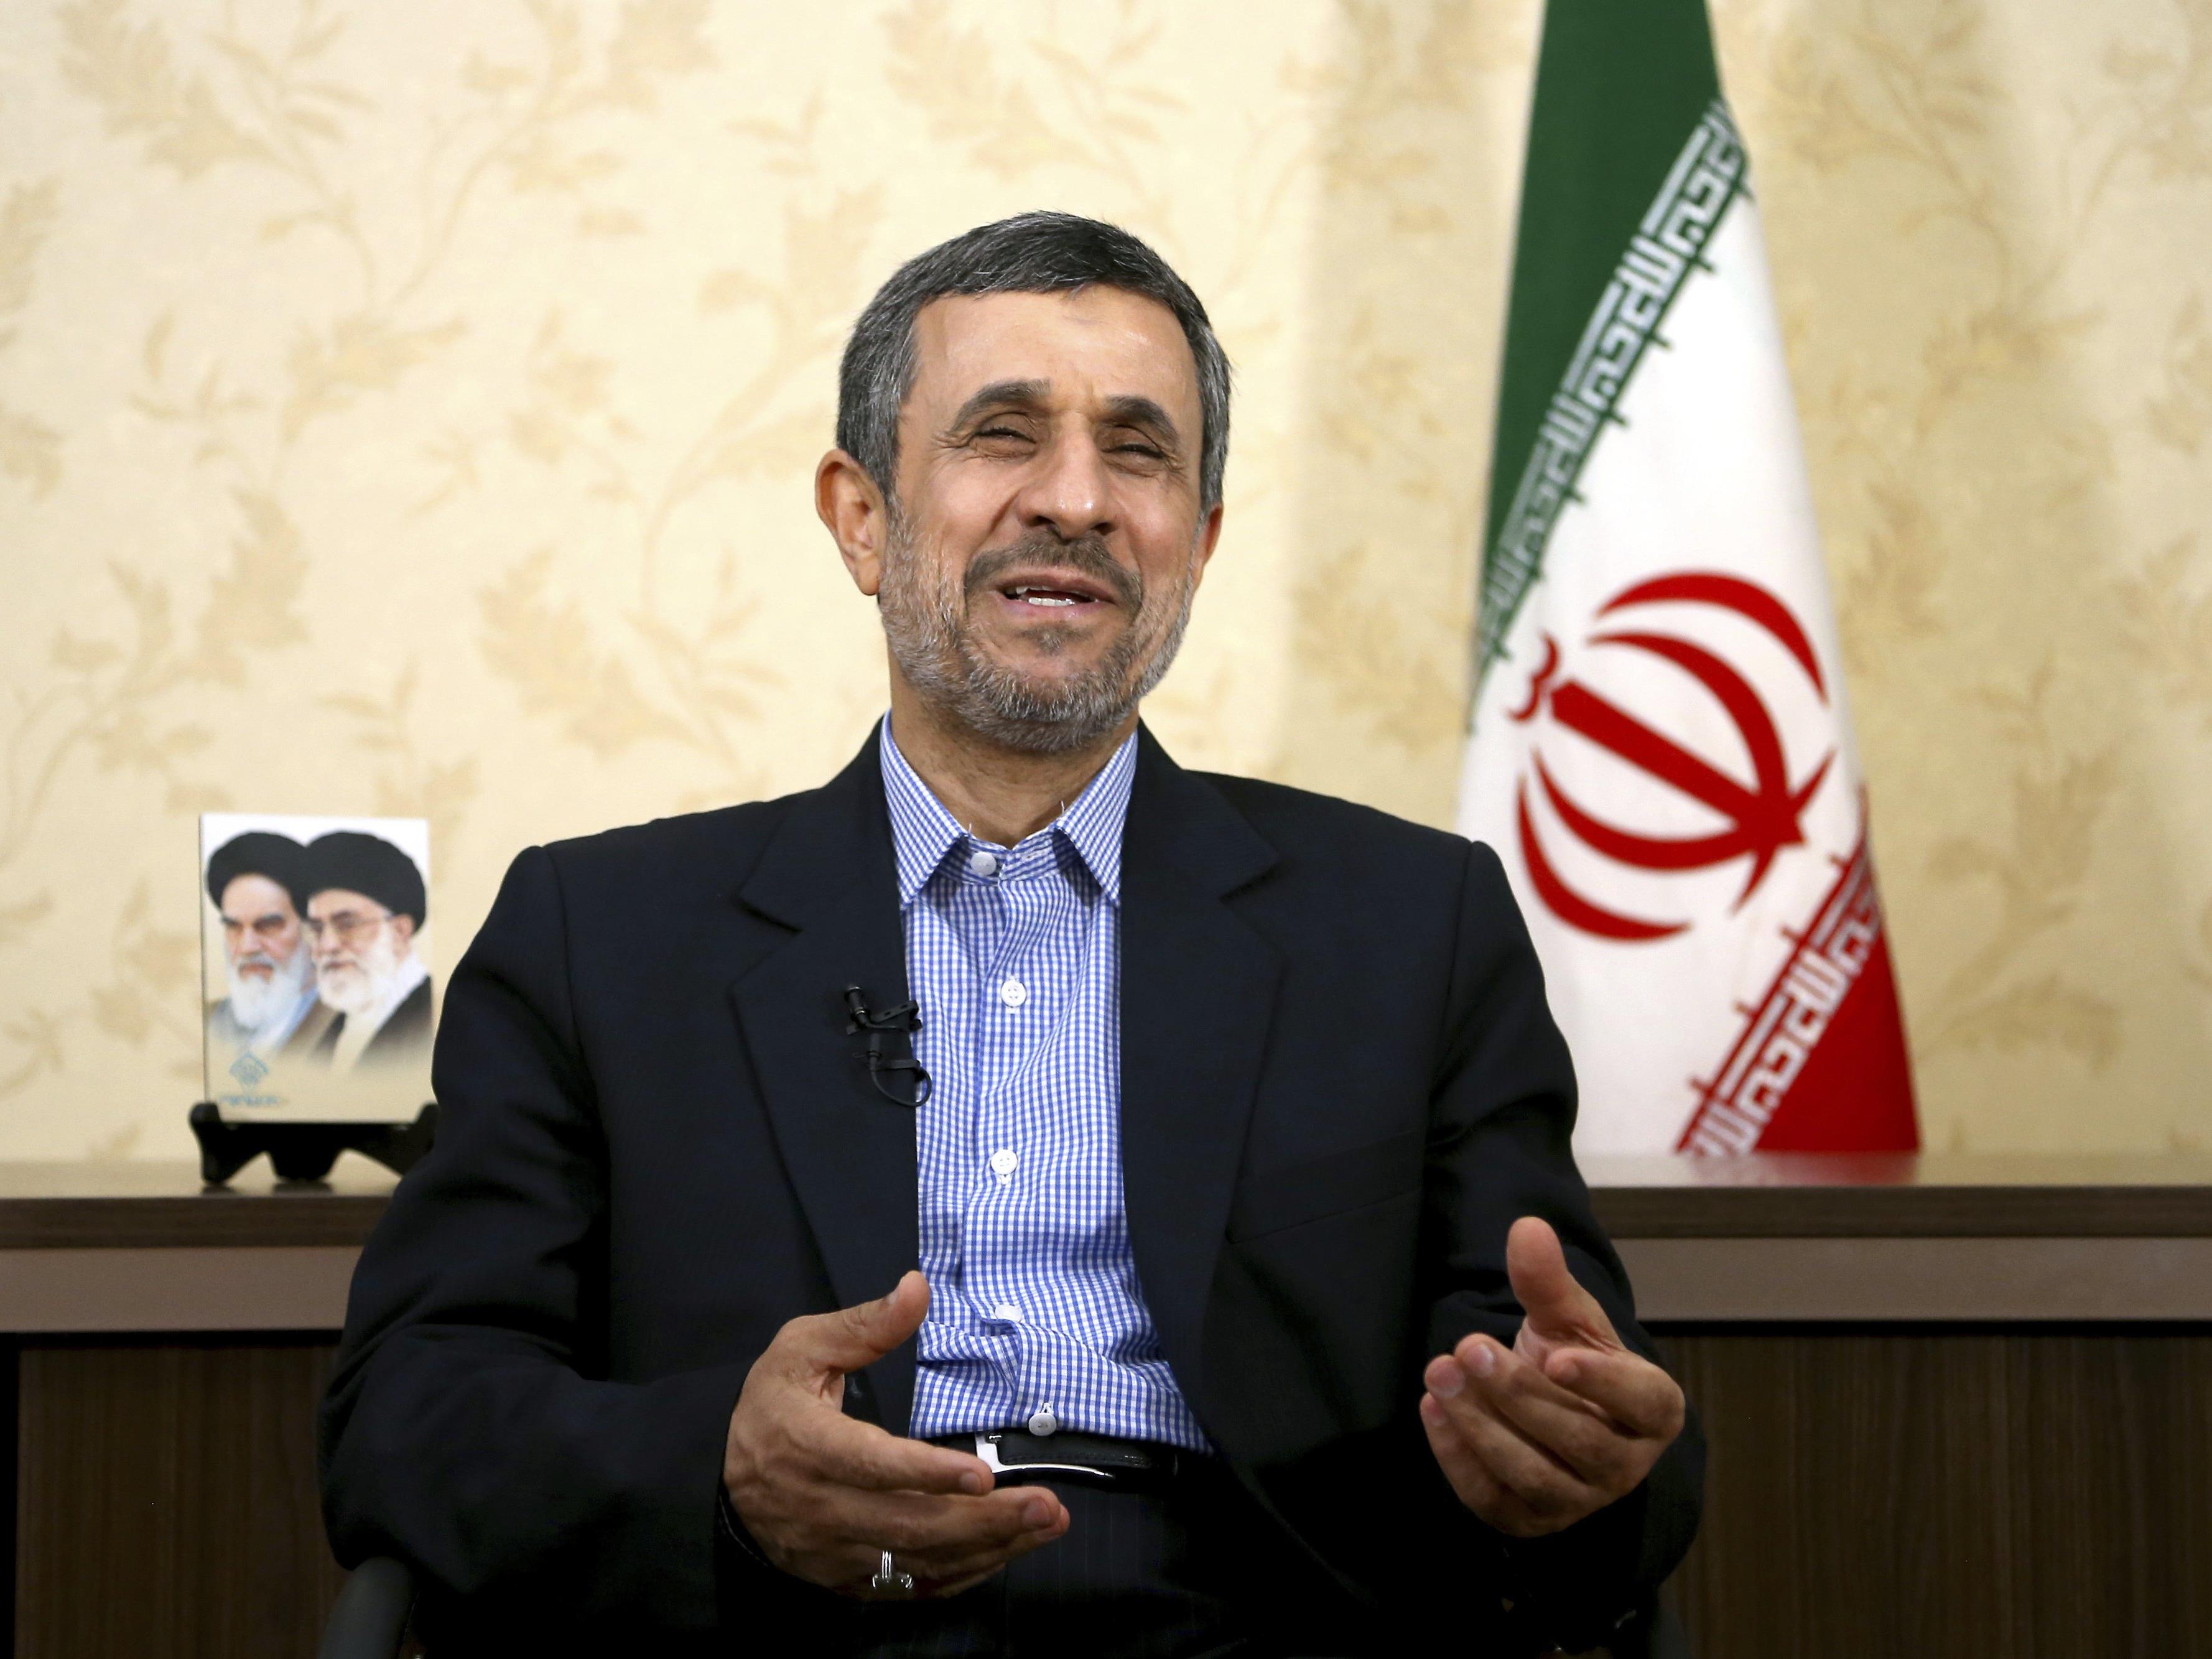 Ahmadinejad ausgeschlossen - Wächterrat stellt Weichen für Duell des Reformers Rouhani mit dem konservativen Kandidaten Raisi.